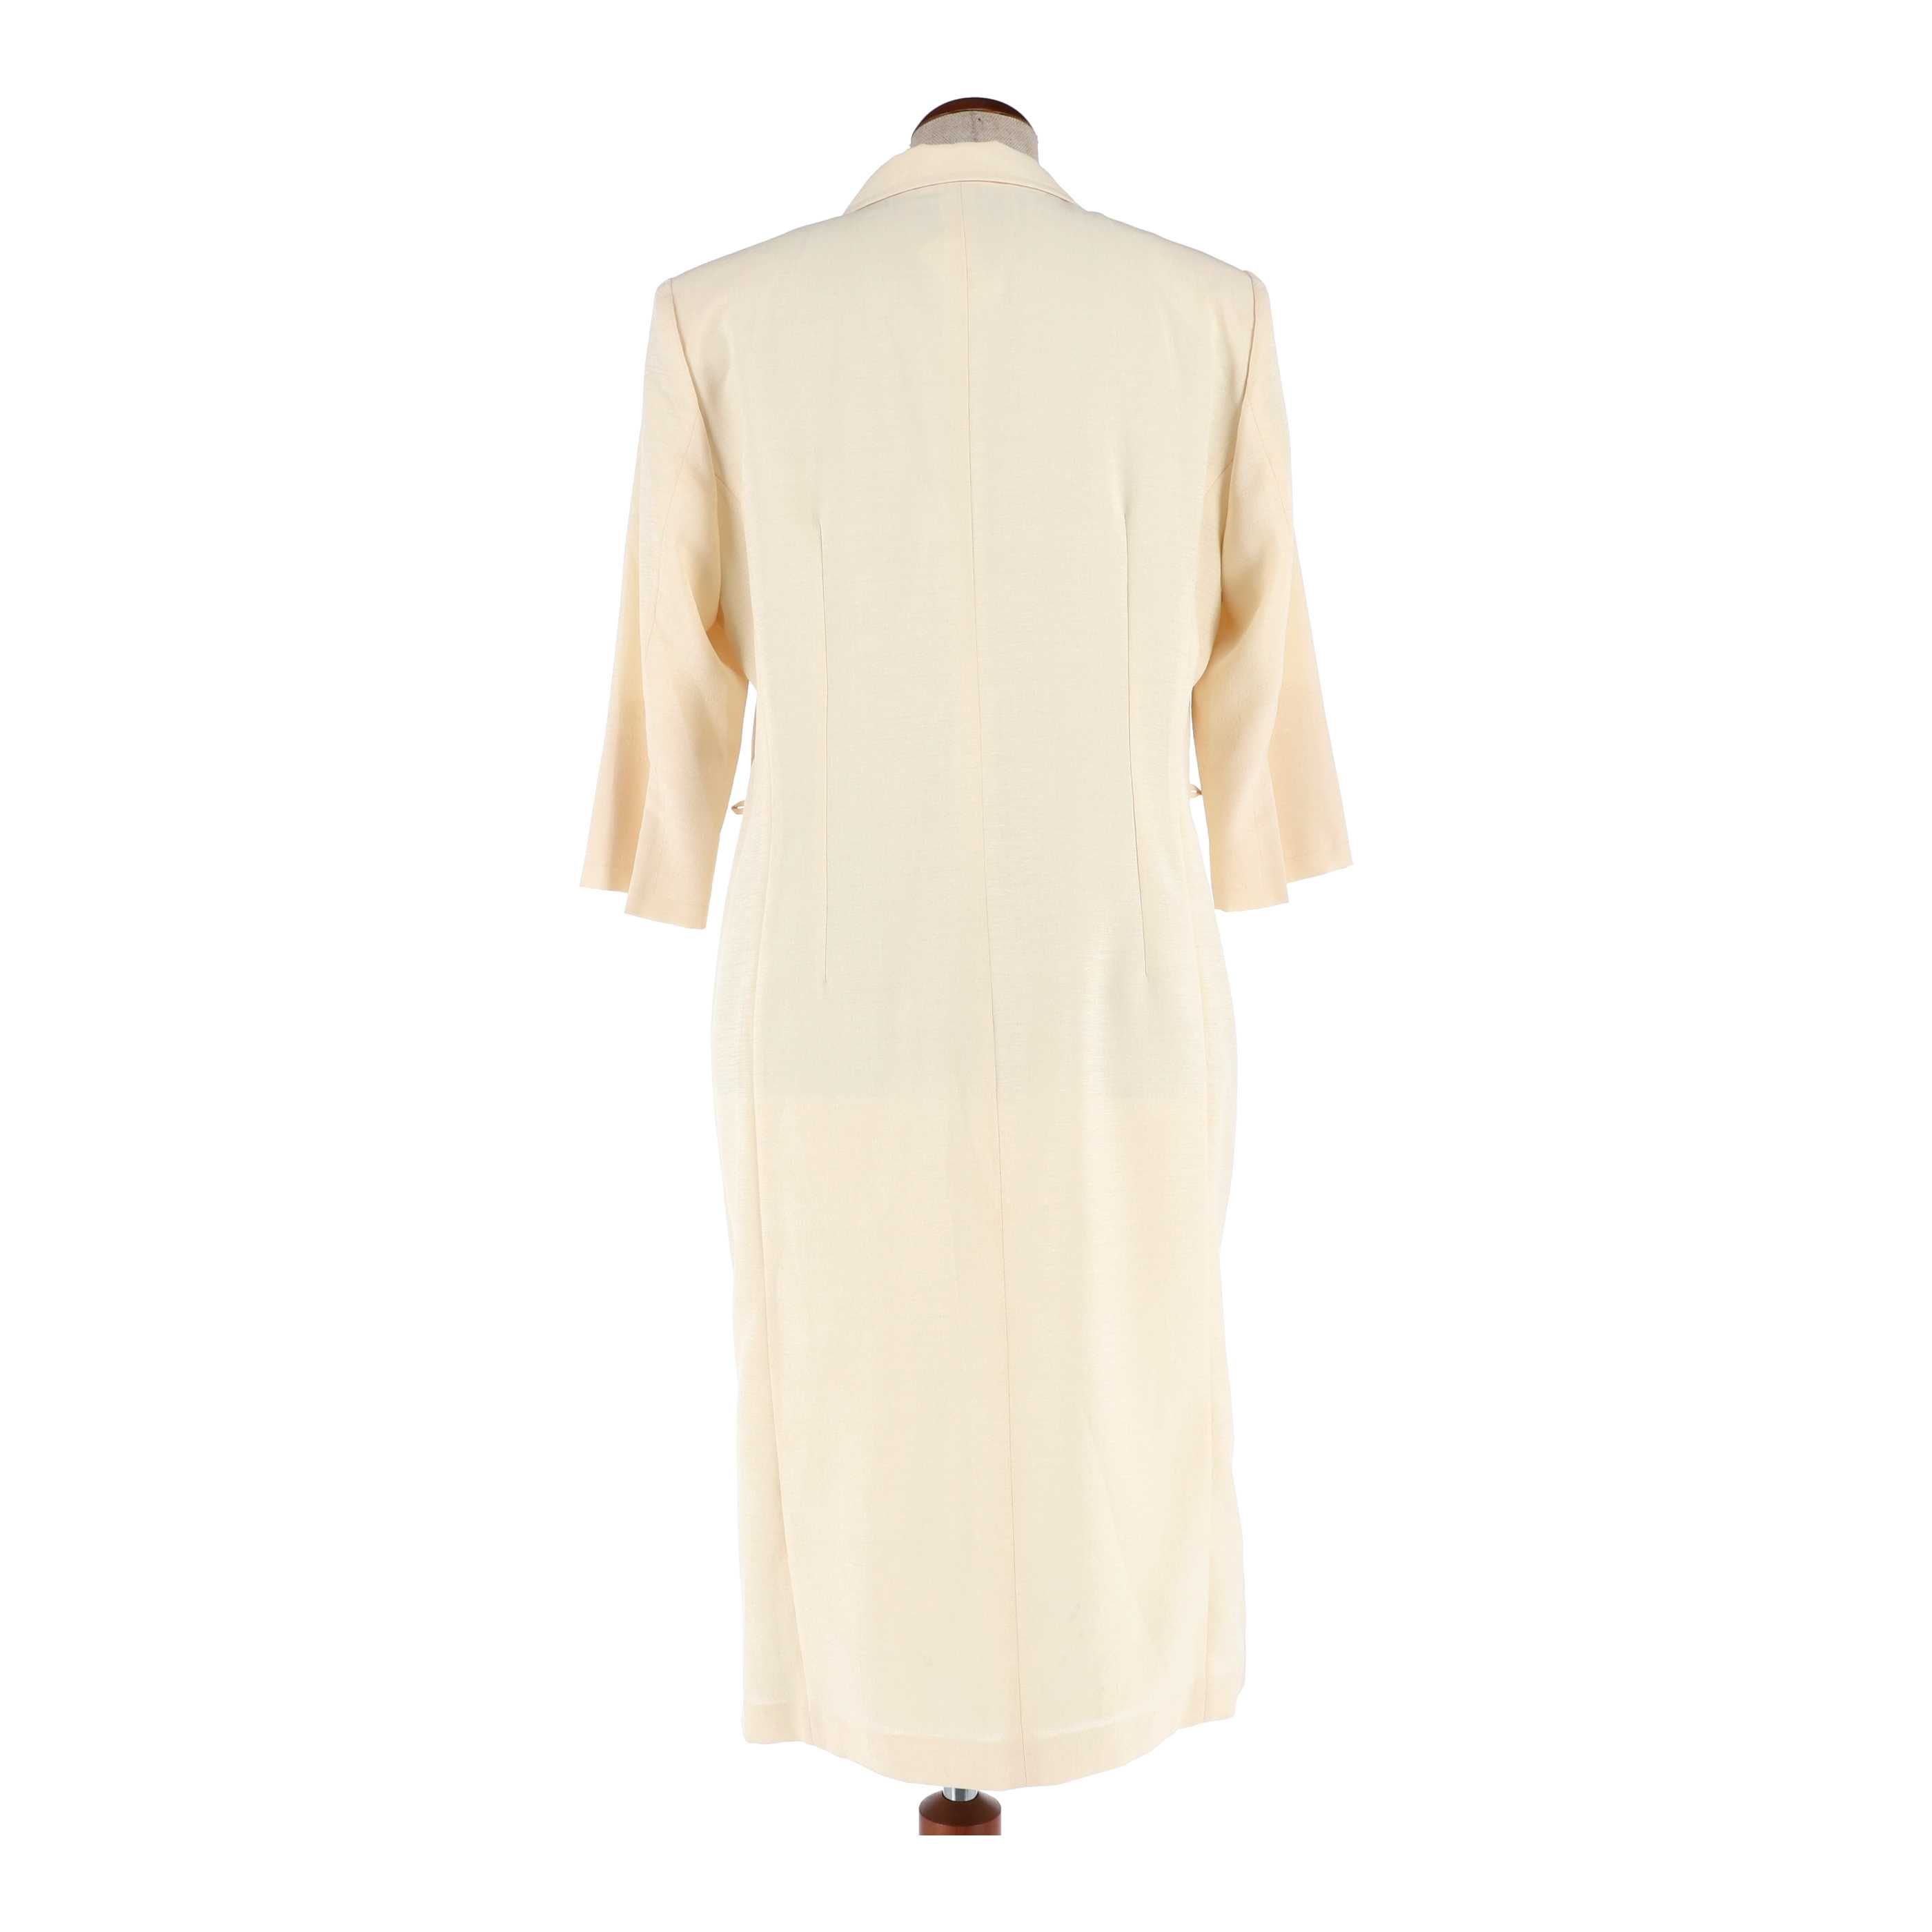 Kremowa sukienka marki Szefler, rozmiar 46